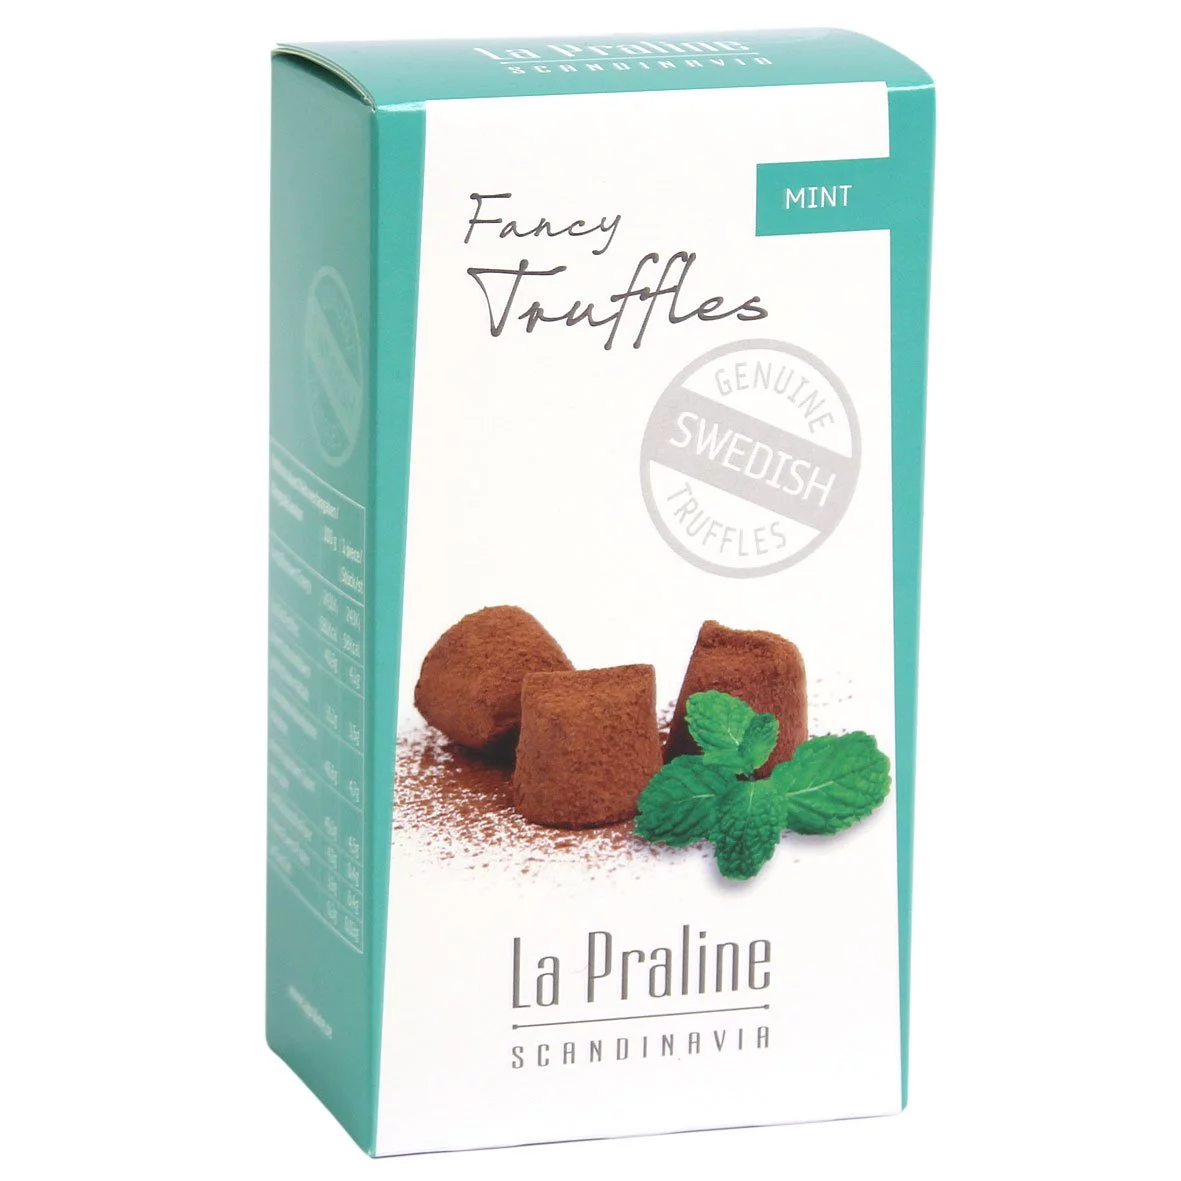 La Praline Schokotrüffel Pfefferminze / Mint (100g) 1